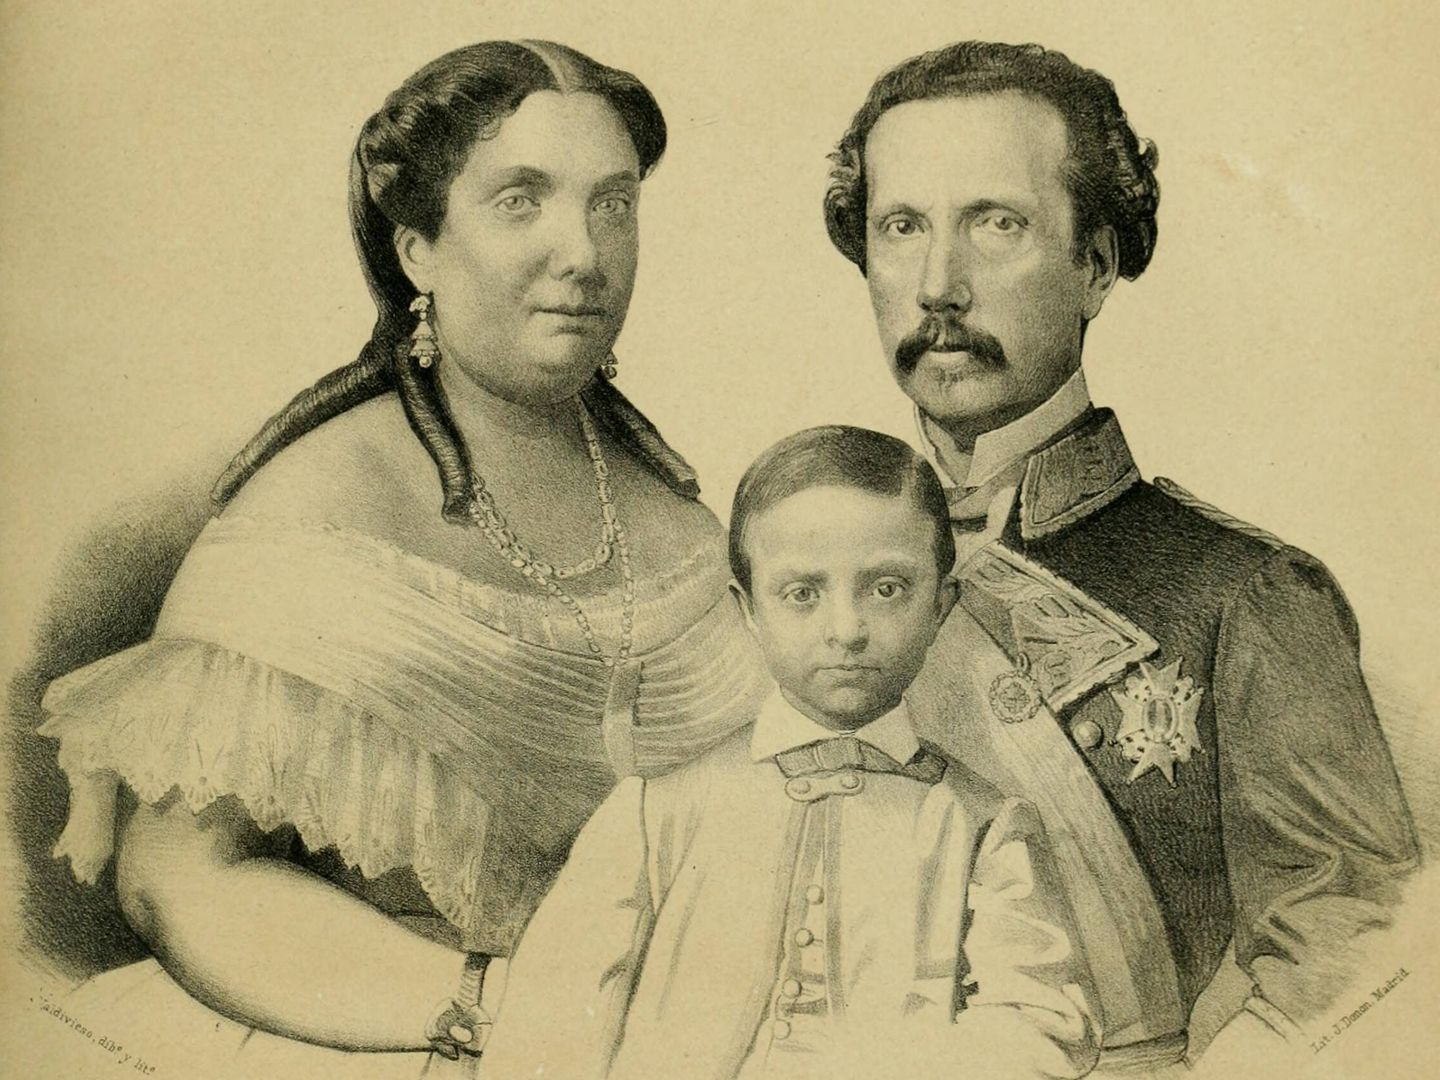 Retrato del un joven príncipe Alfonso junto a su madre Isabel II y su padre putativo Francisco de Asís de Borbón